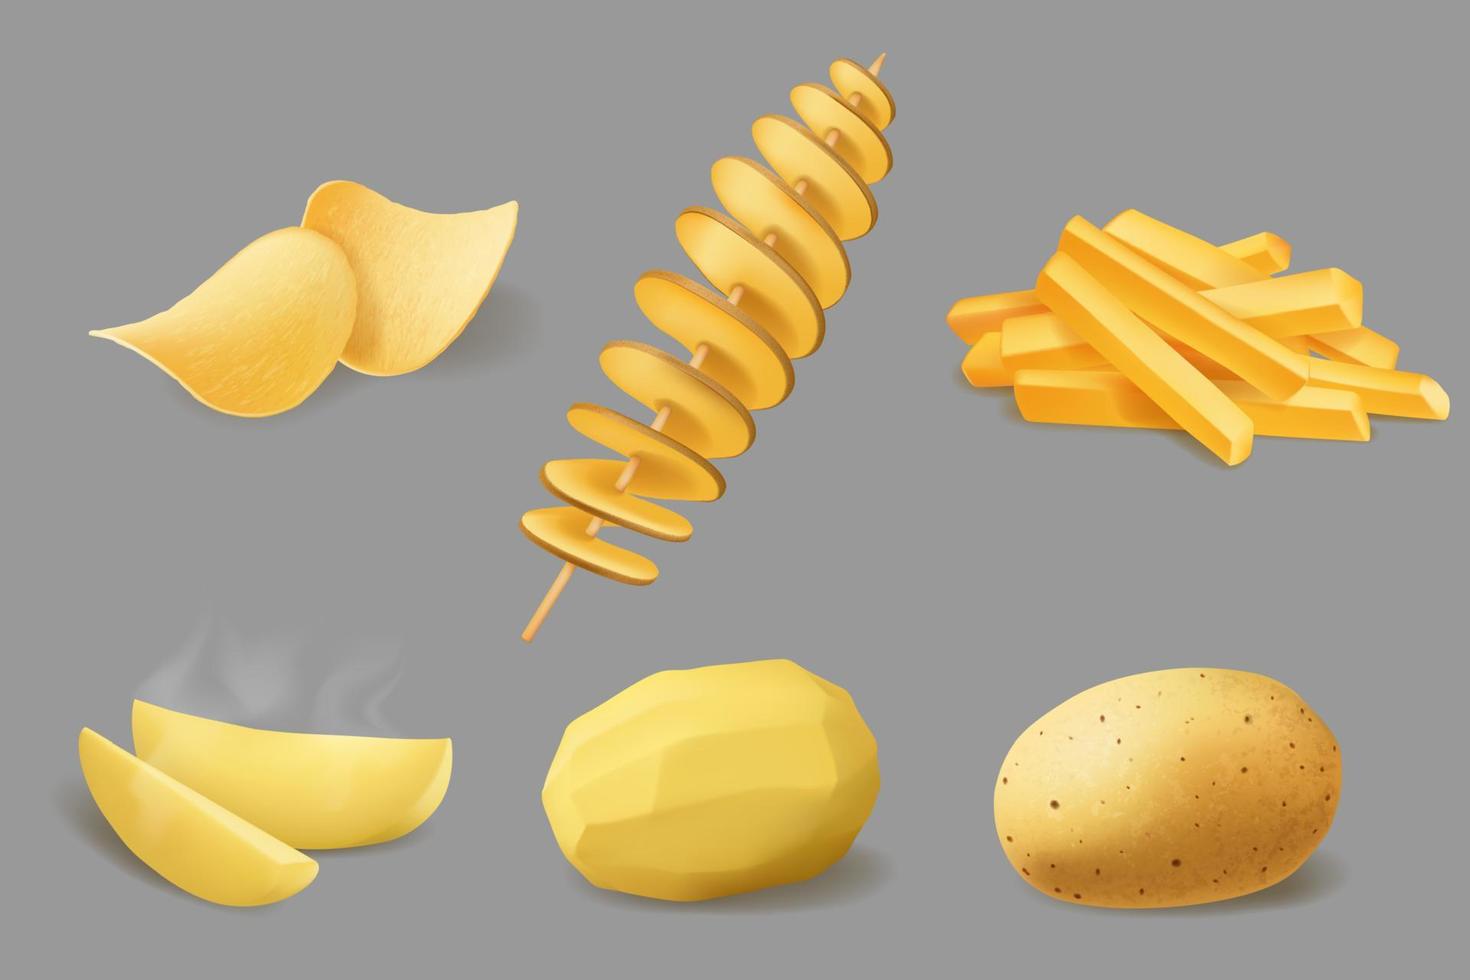 aardappel chips, Patat en tornado, realistisch voedsel vector